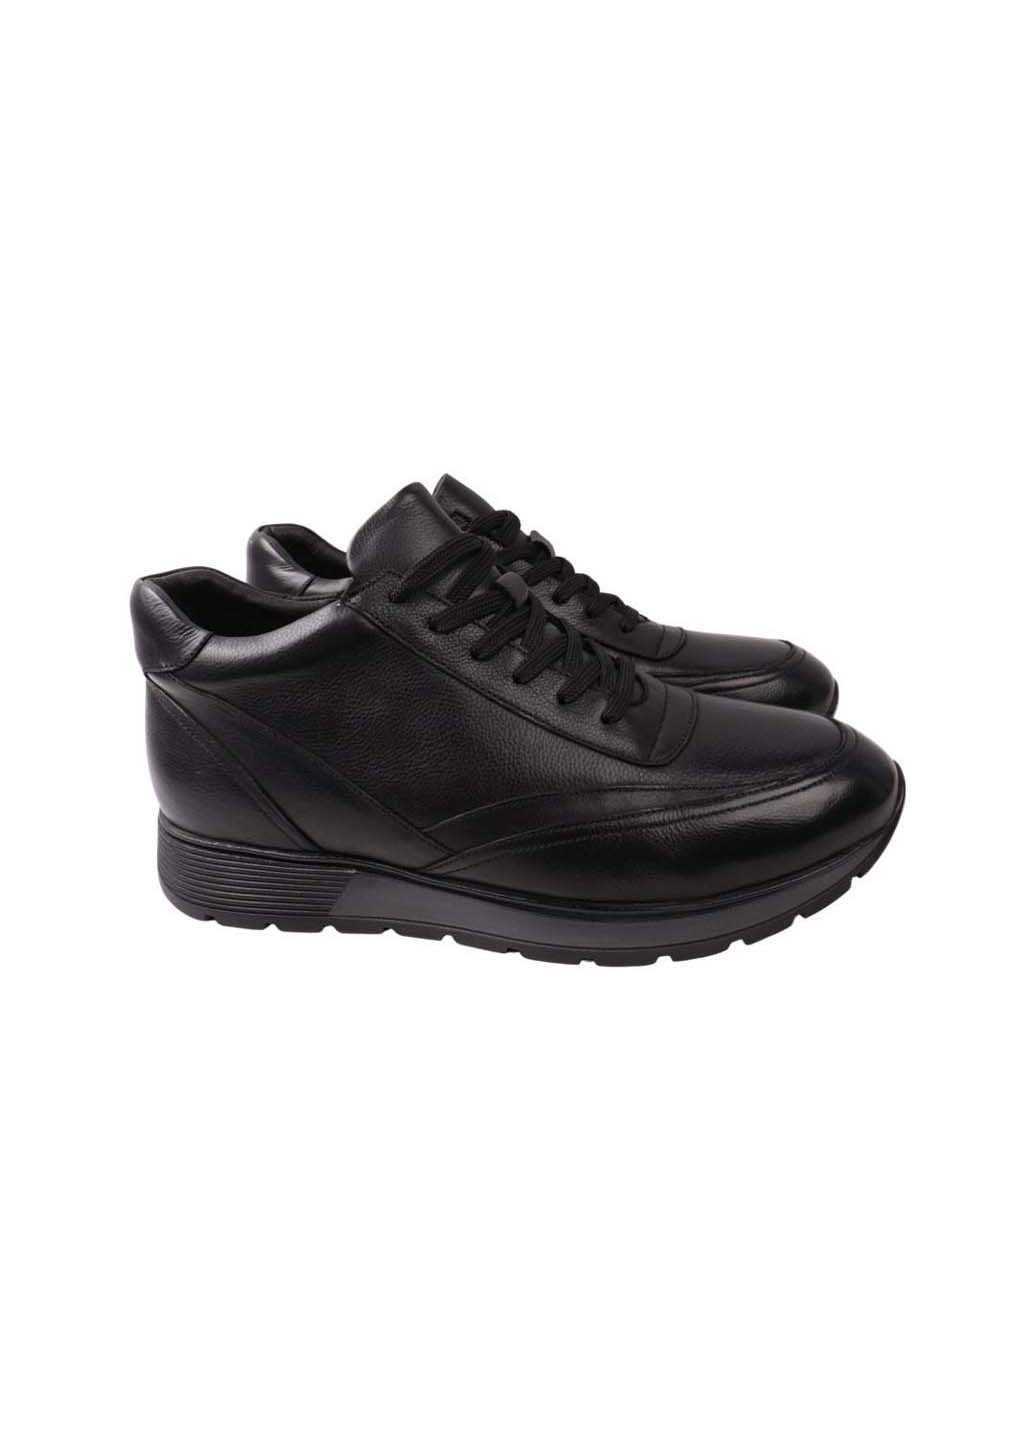 Черные осенние ботинки Anemone